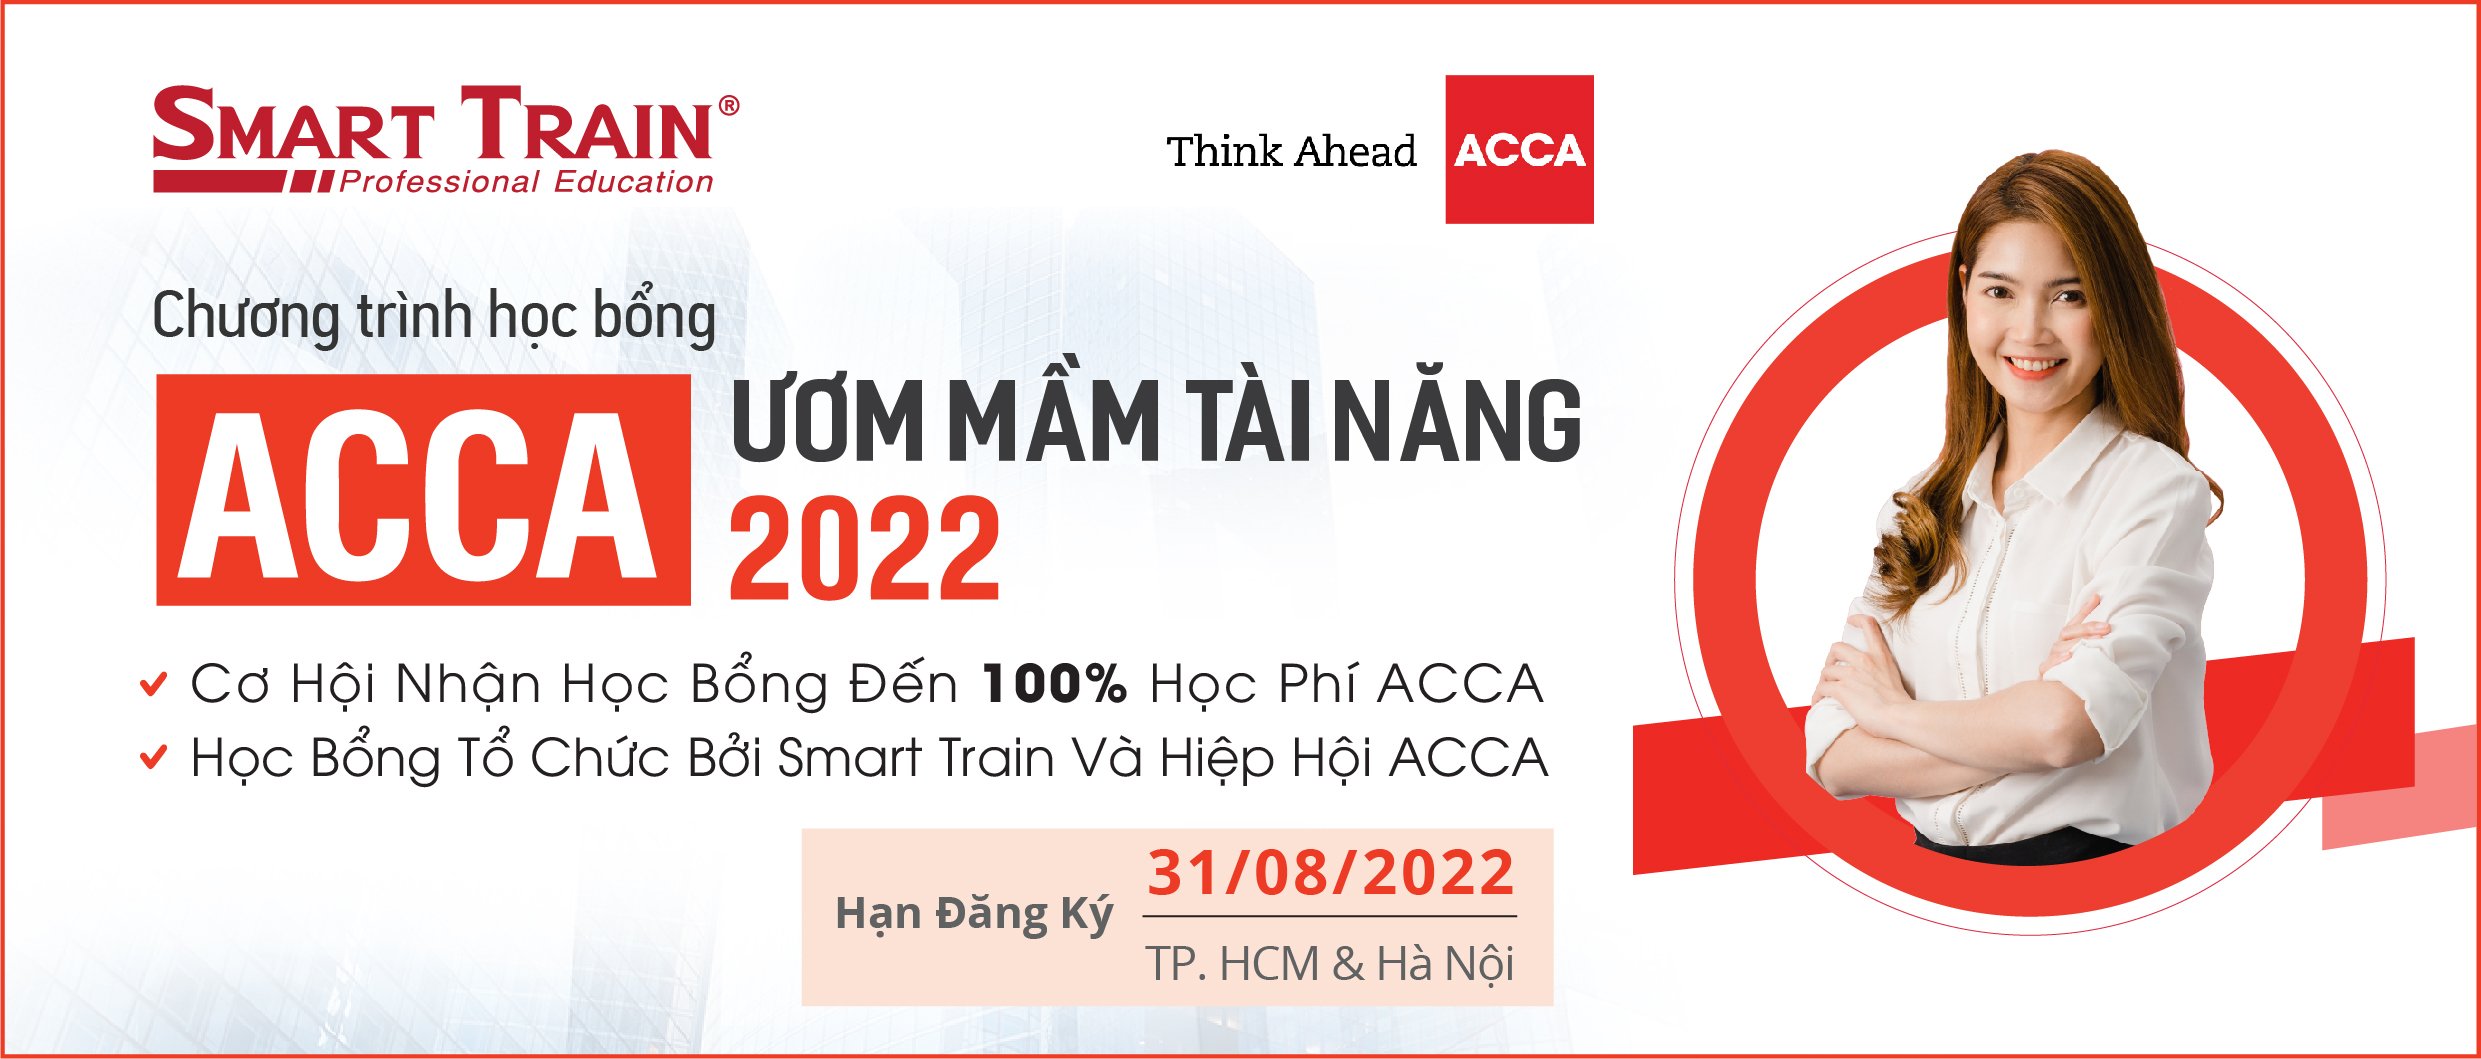 học bổng ACCA ươm mầm tài năng Smart Train 2022